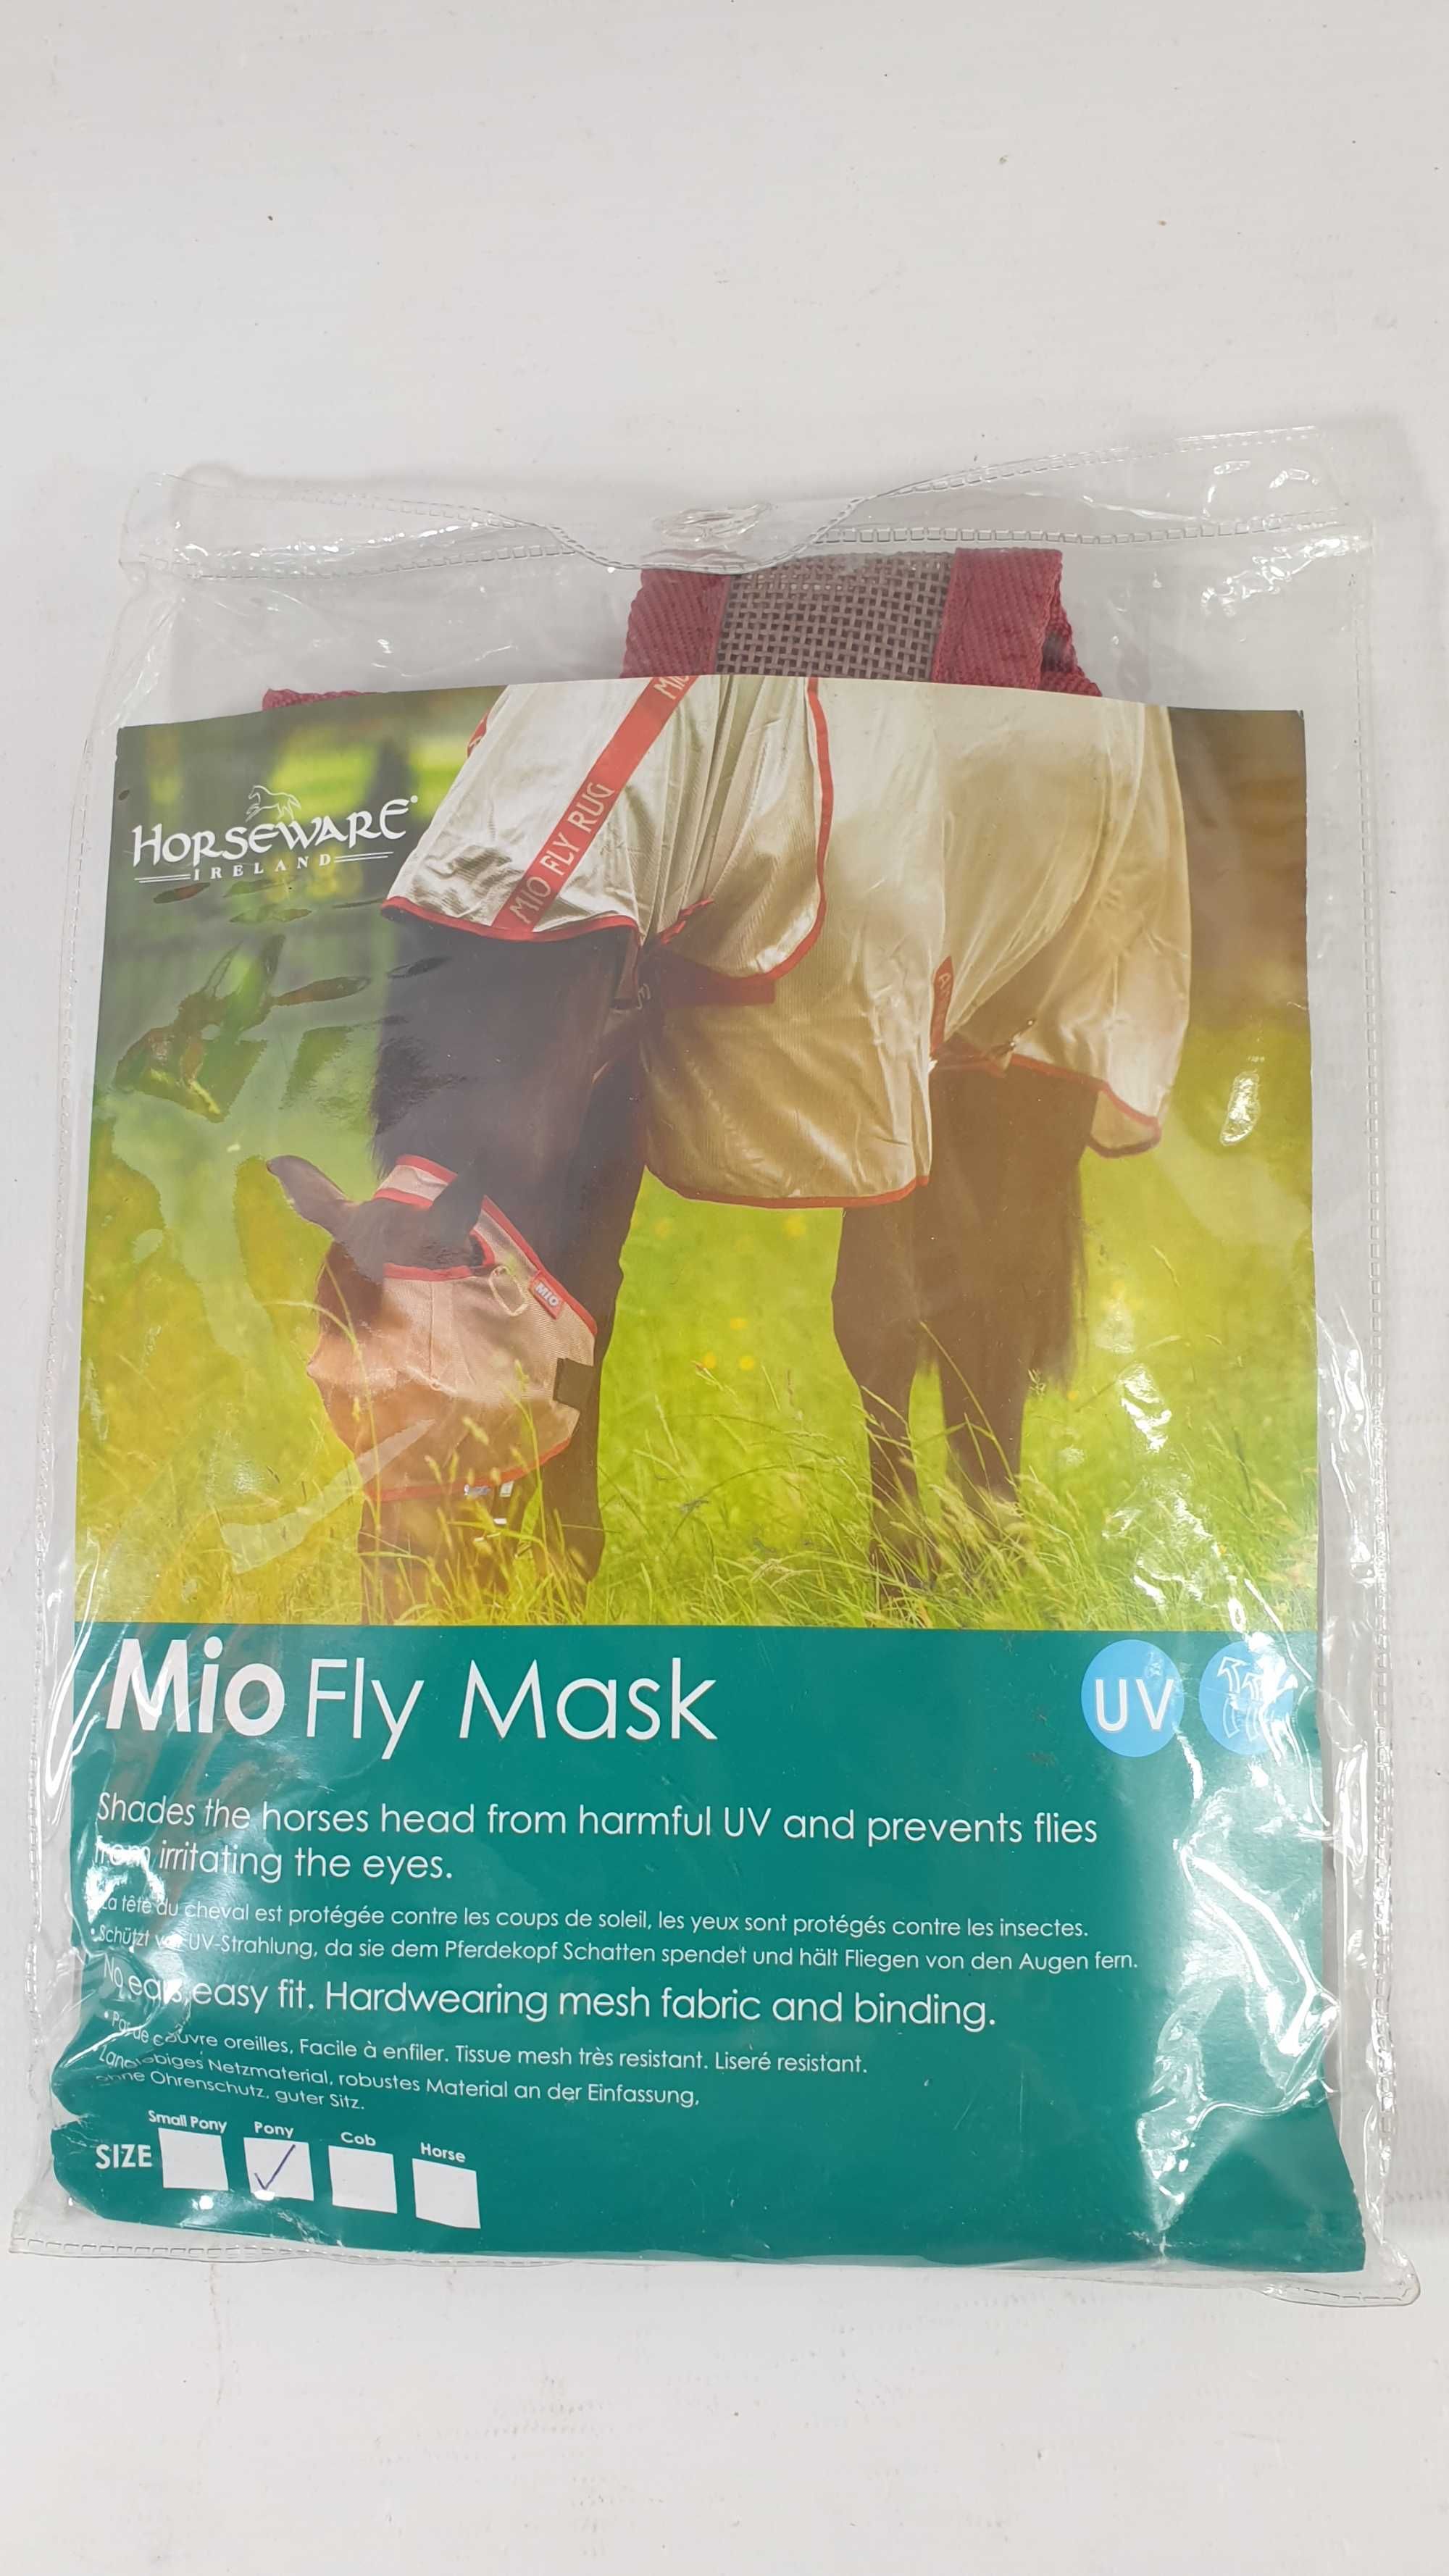 MIO FLY MASK horseware maska na muchy dla kucyka